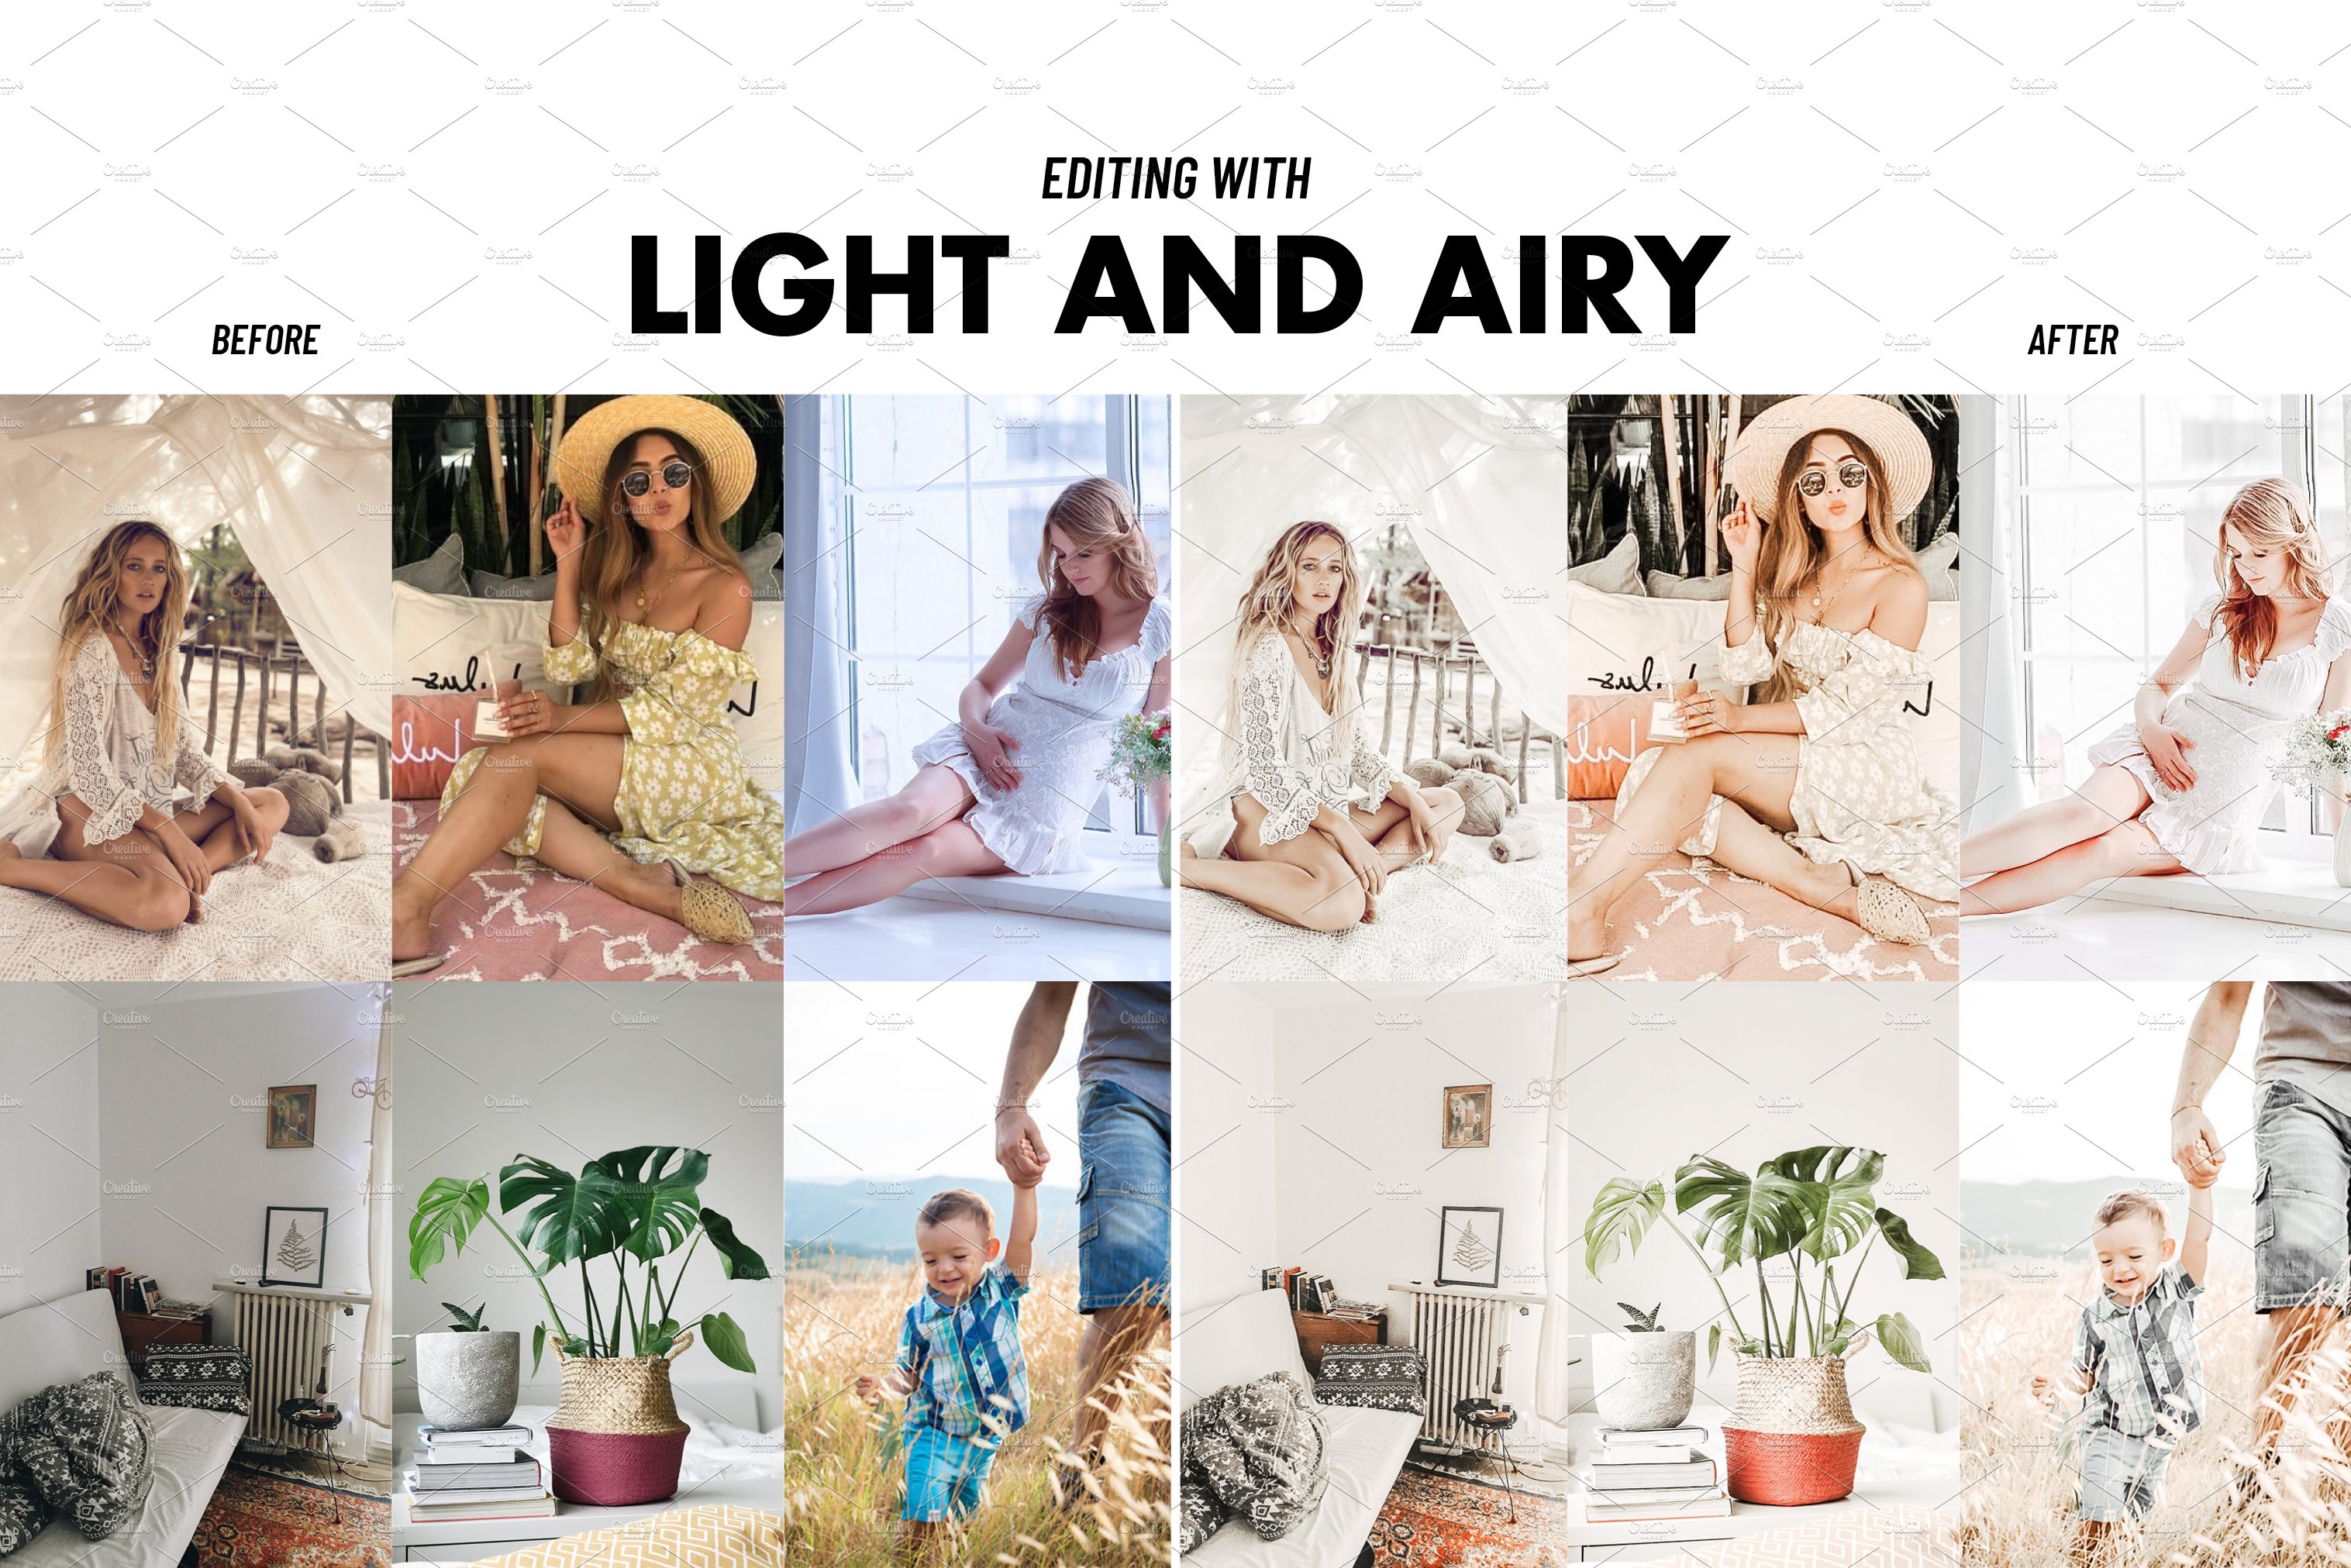 lightroom presets download free instagram bundle allshop 22 303